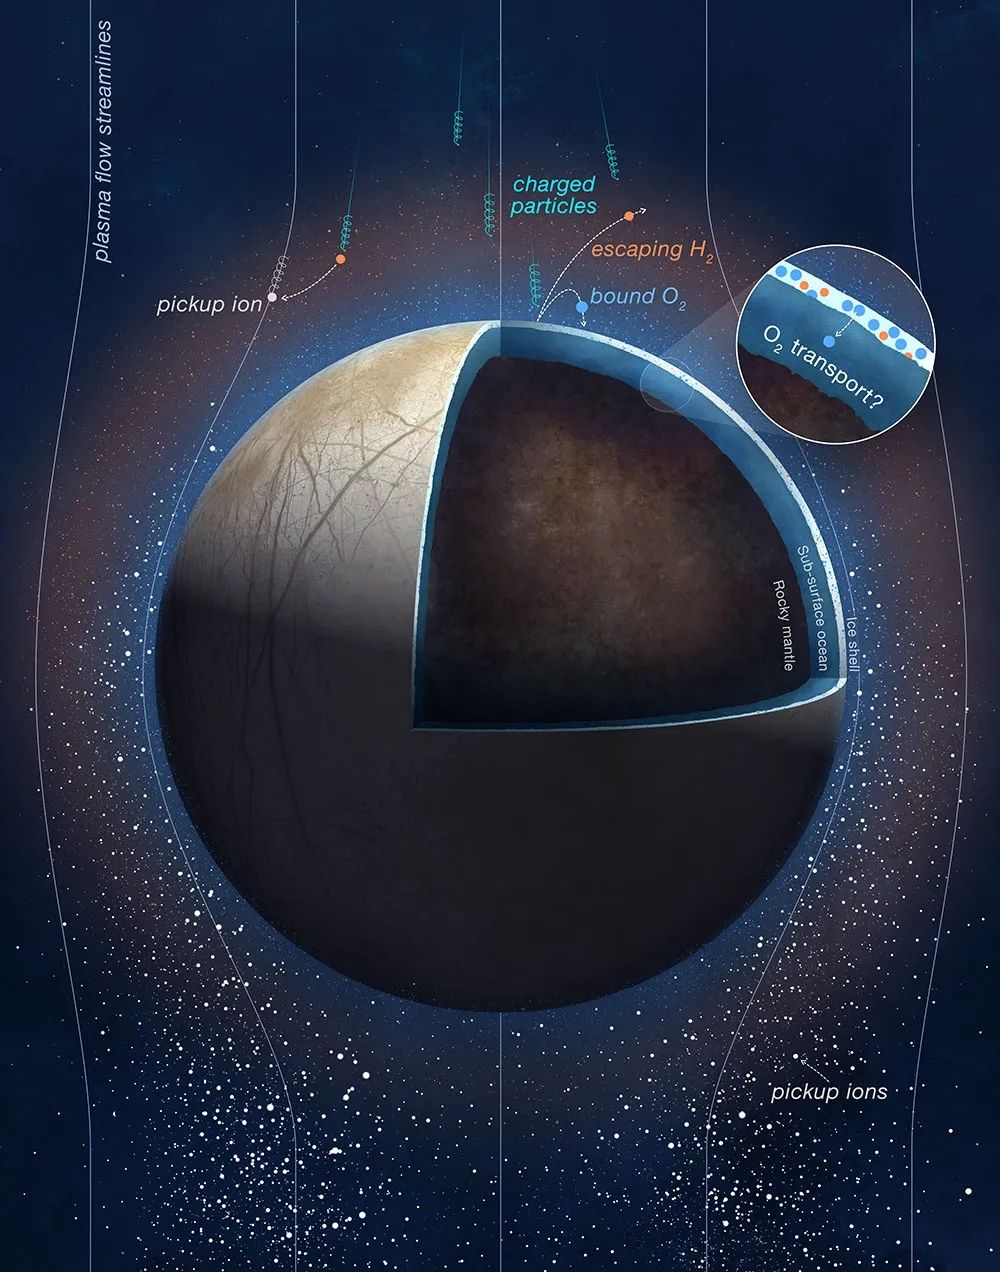 Заряженные частицы Юпитера, падающие на поверхность Европы, расщепляют молекулы замороженной воды на молекулы кислорода и водорода